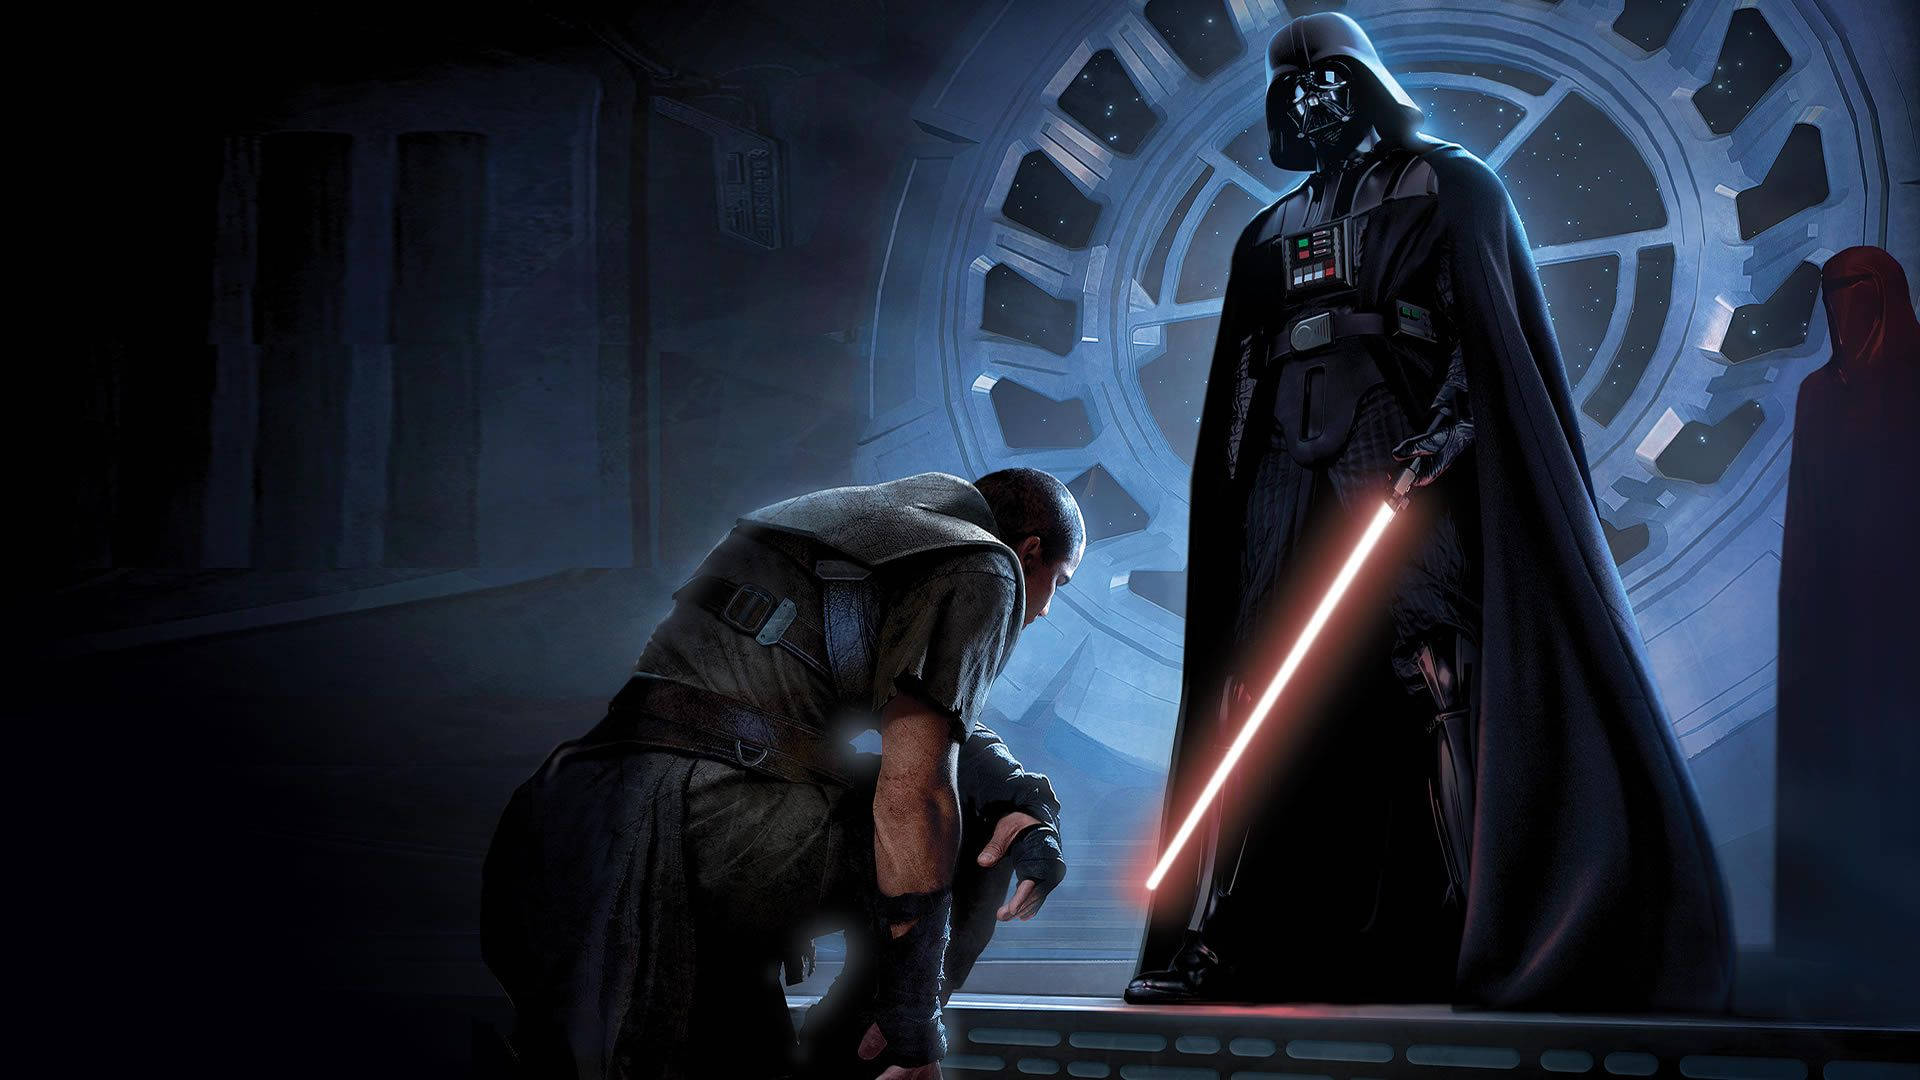 Darth Vader Star Wars Background